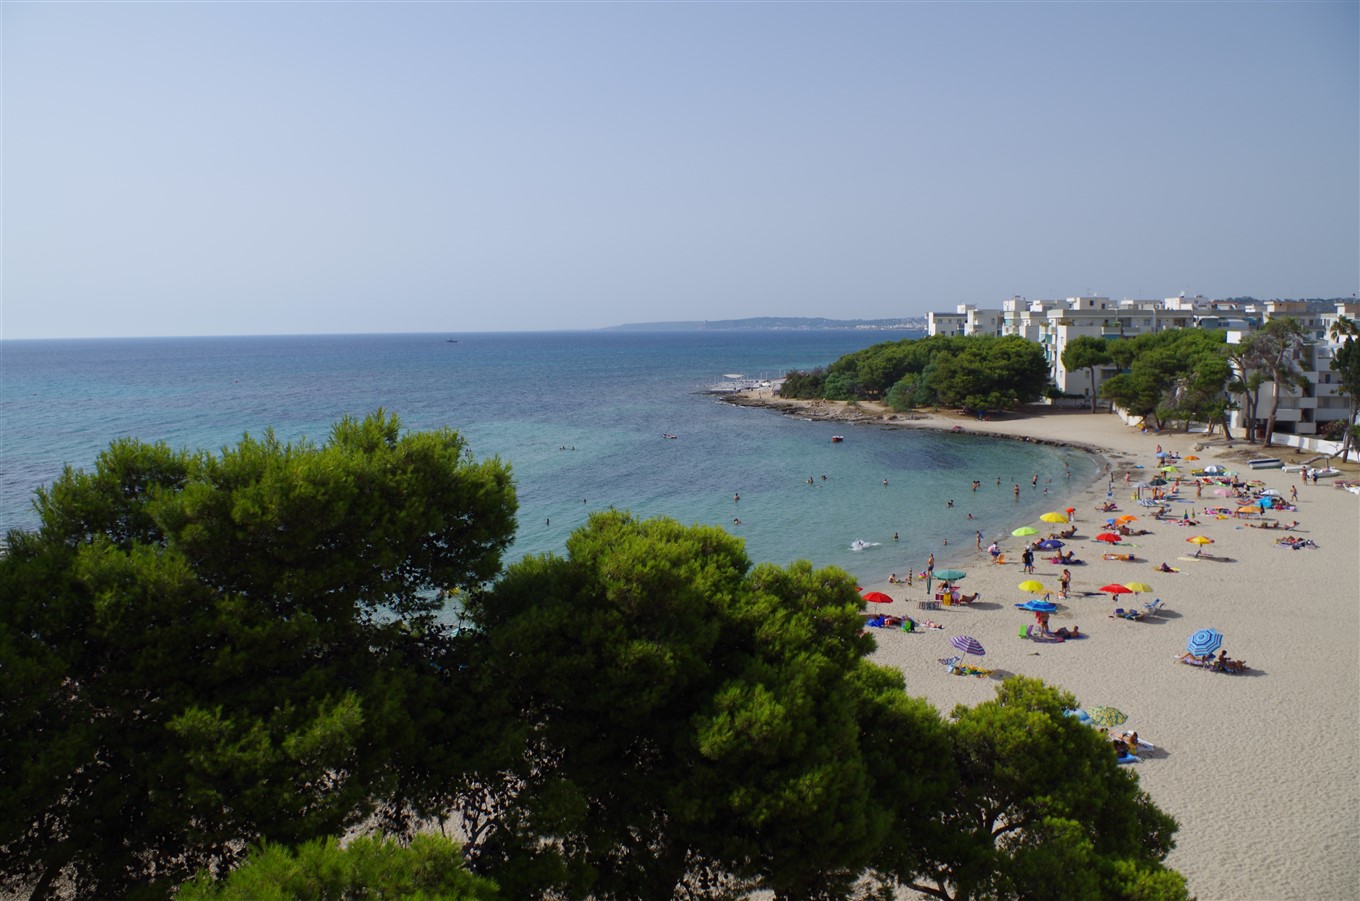 Fotografie cu Lido Torre beach cu o suprafață de apă pură albastră